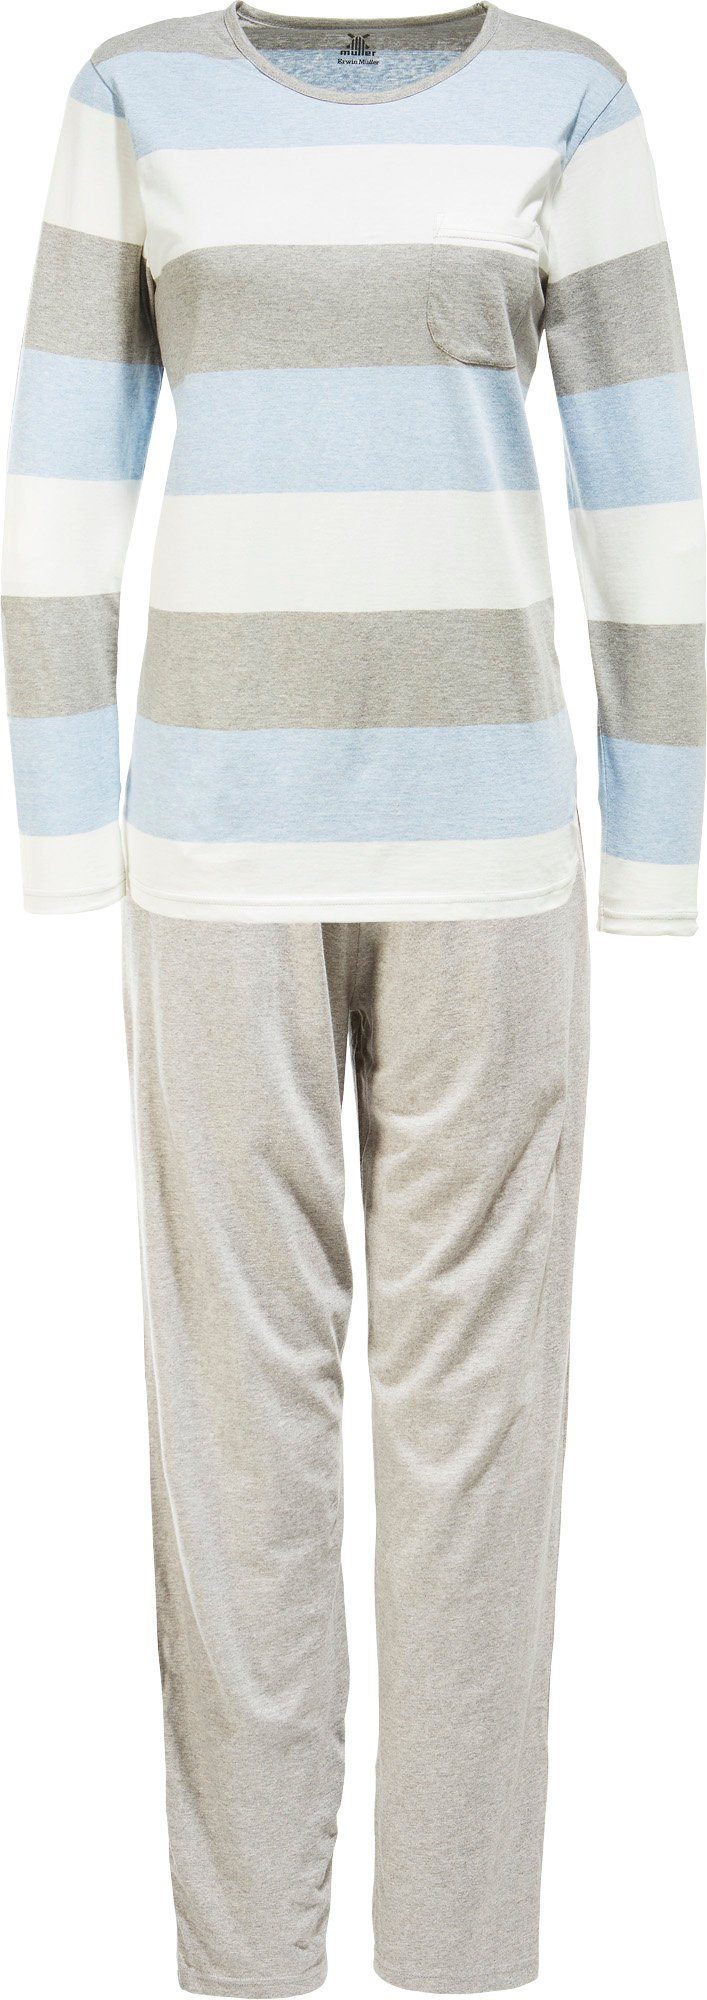 Erwin Müller Pyjama Damen-Schlafanzug Single-Jersey Streifen hellblau